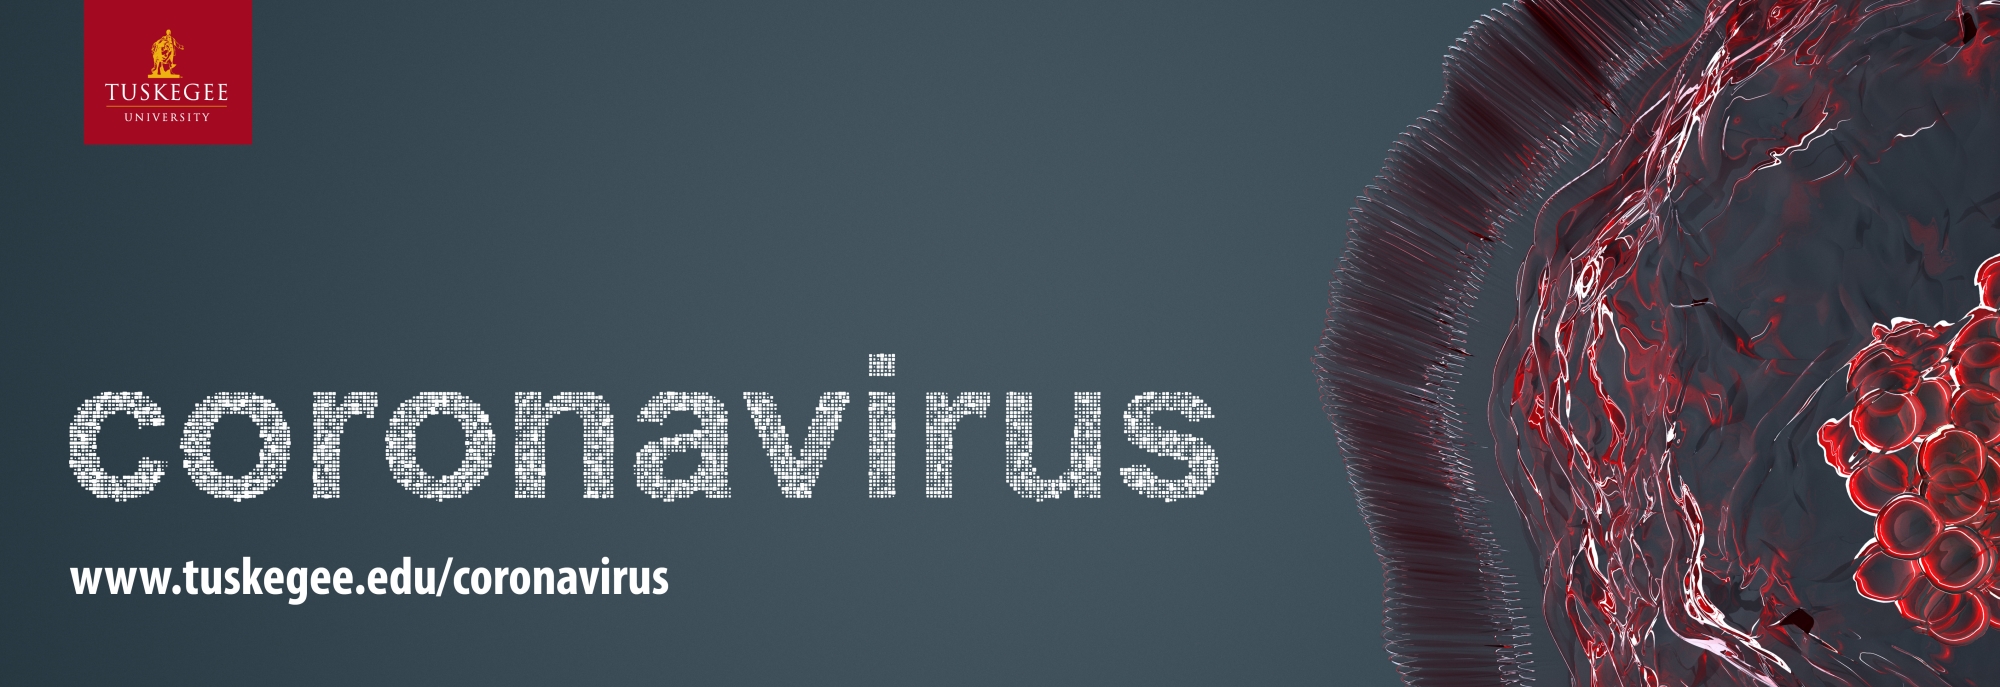 _homepage_coronavirus